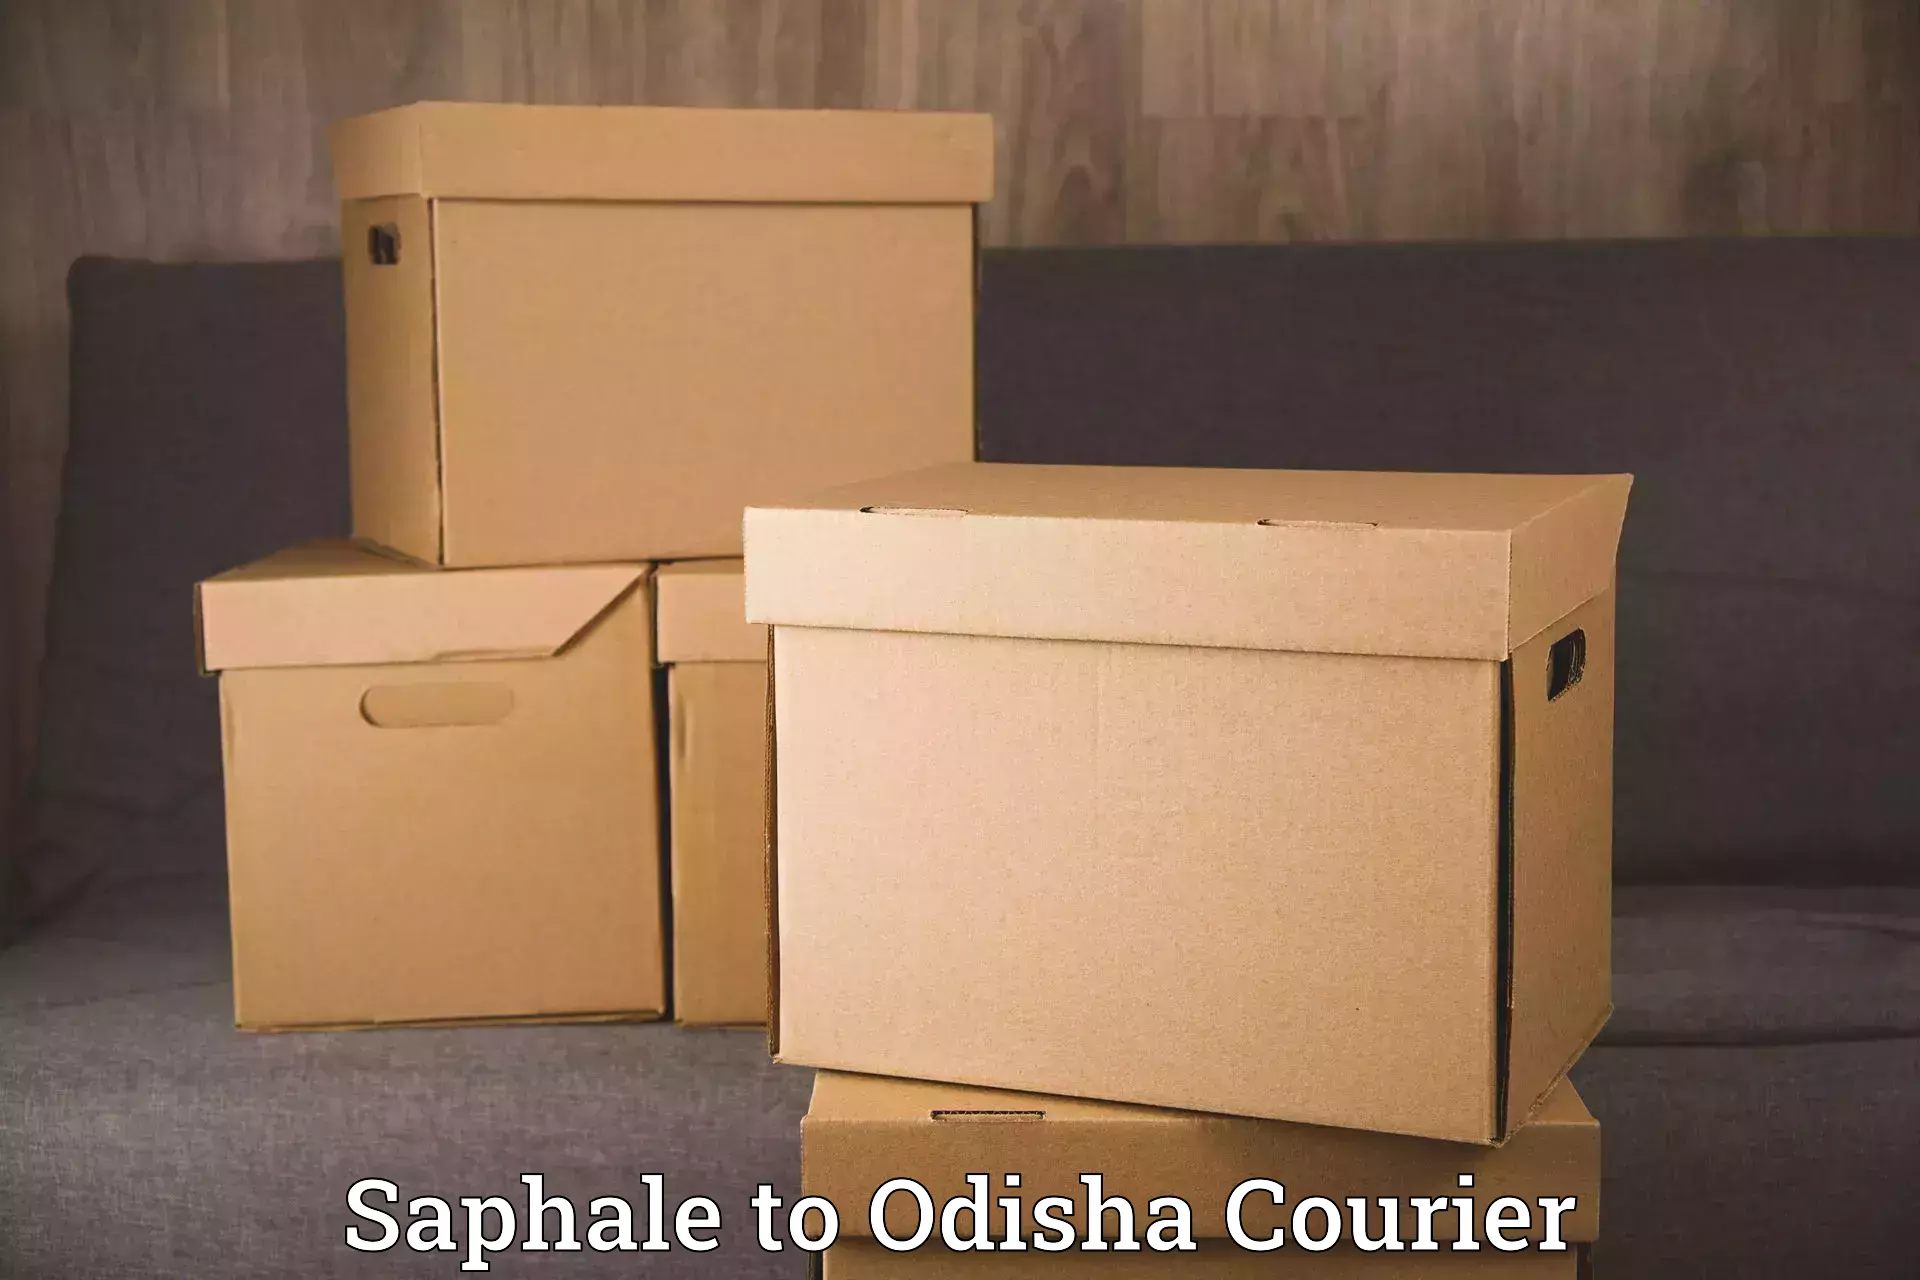 Trusted moving company Saphale to Mathili